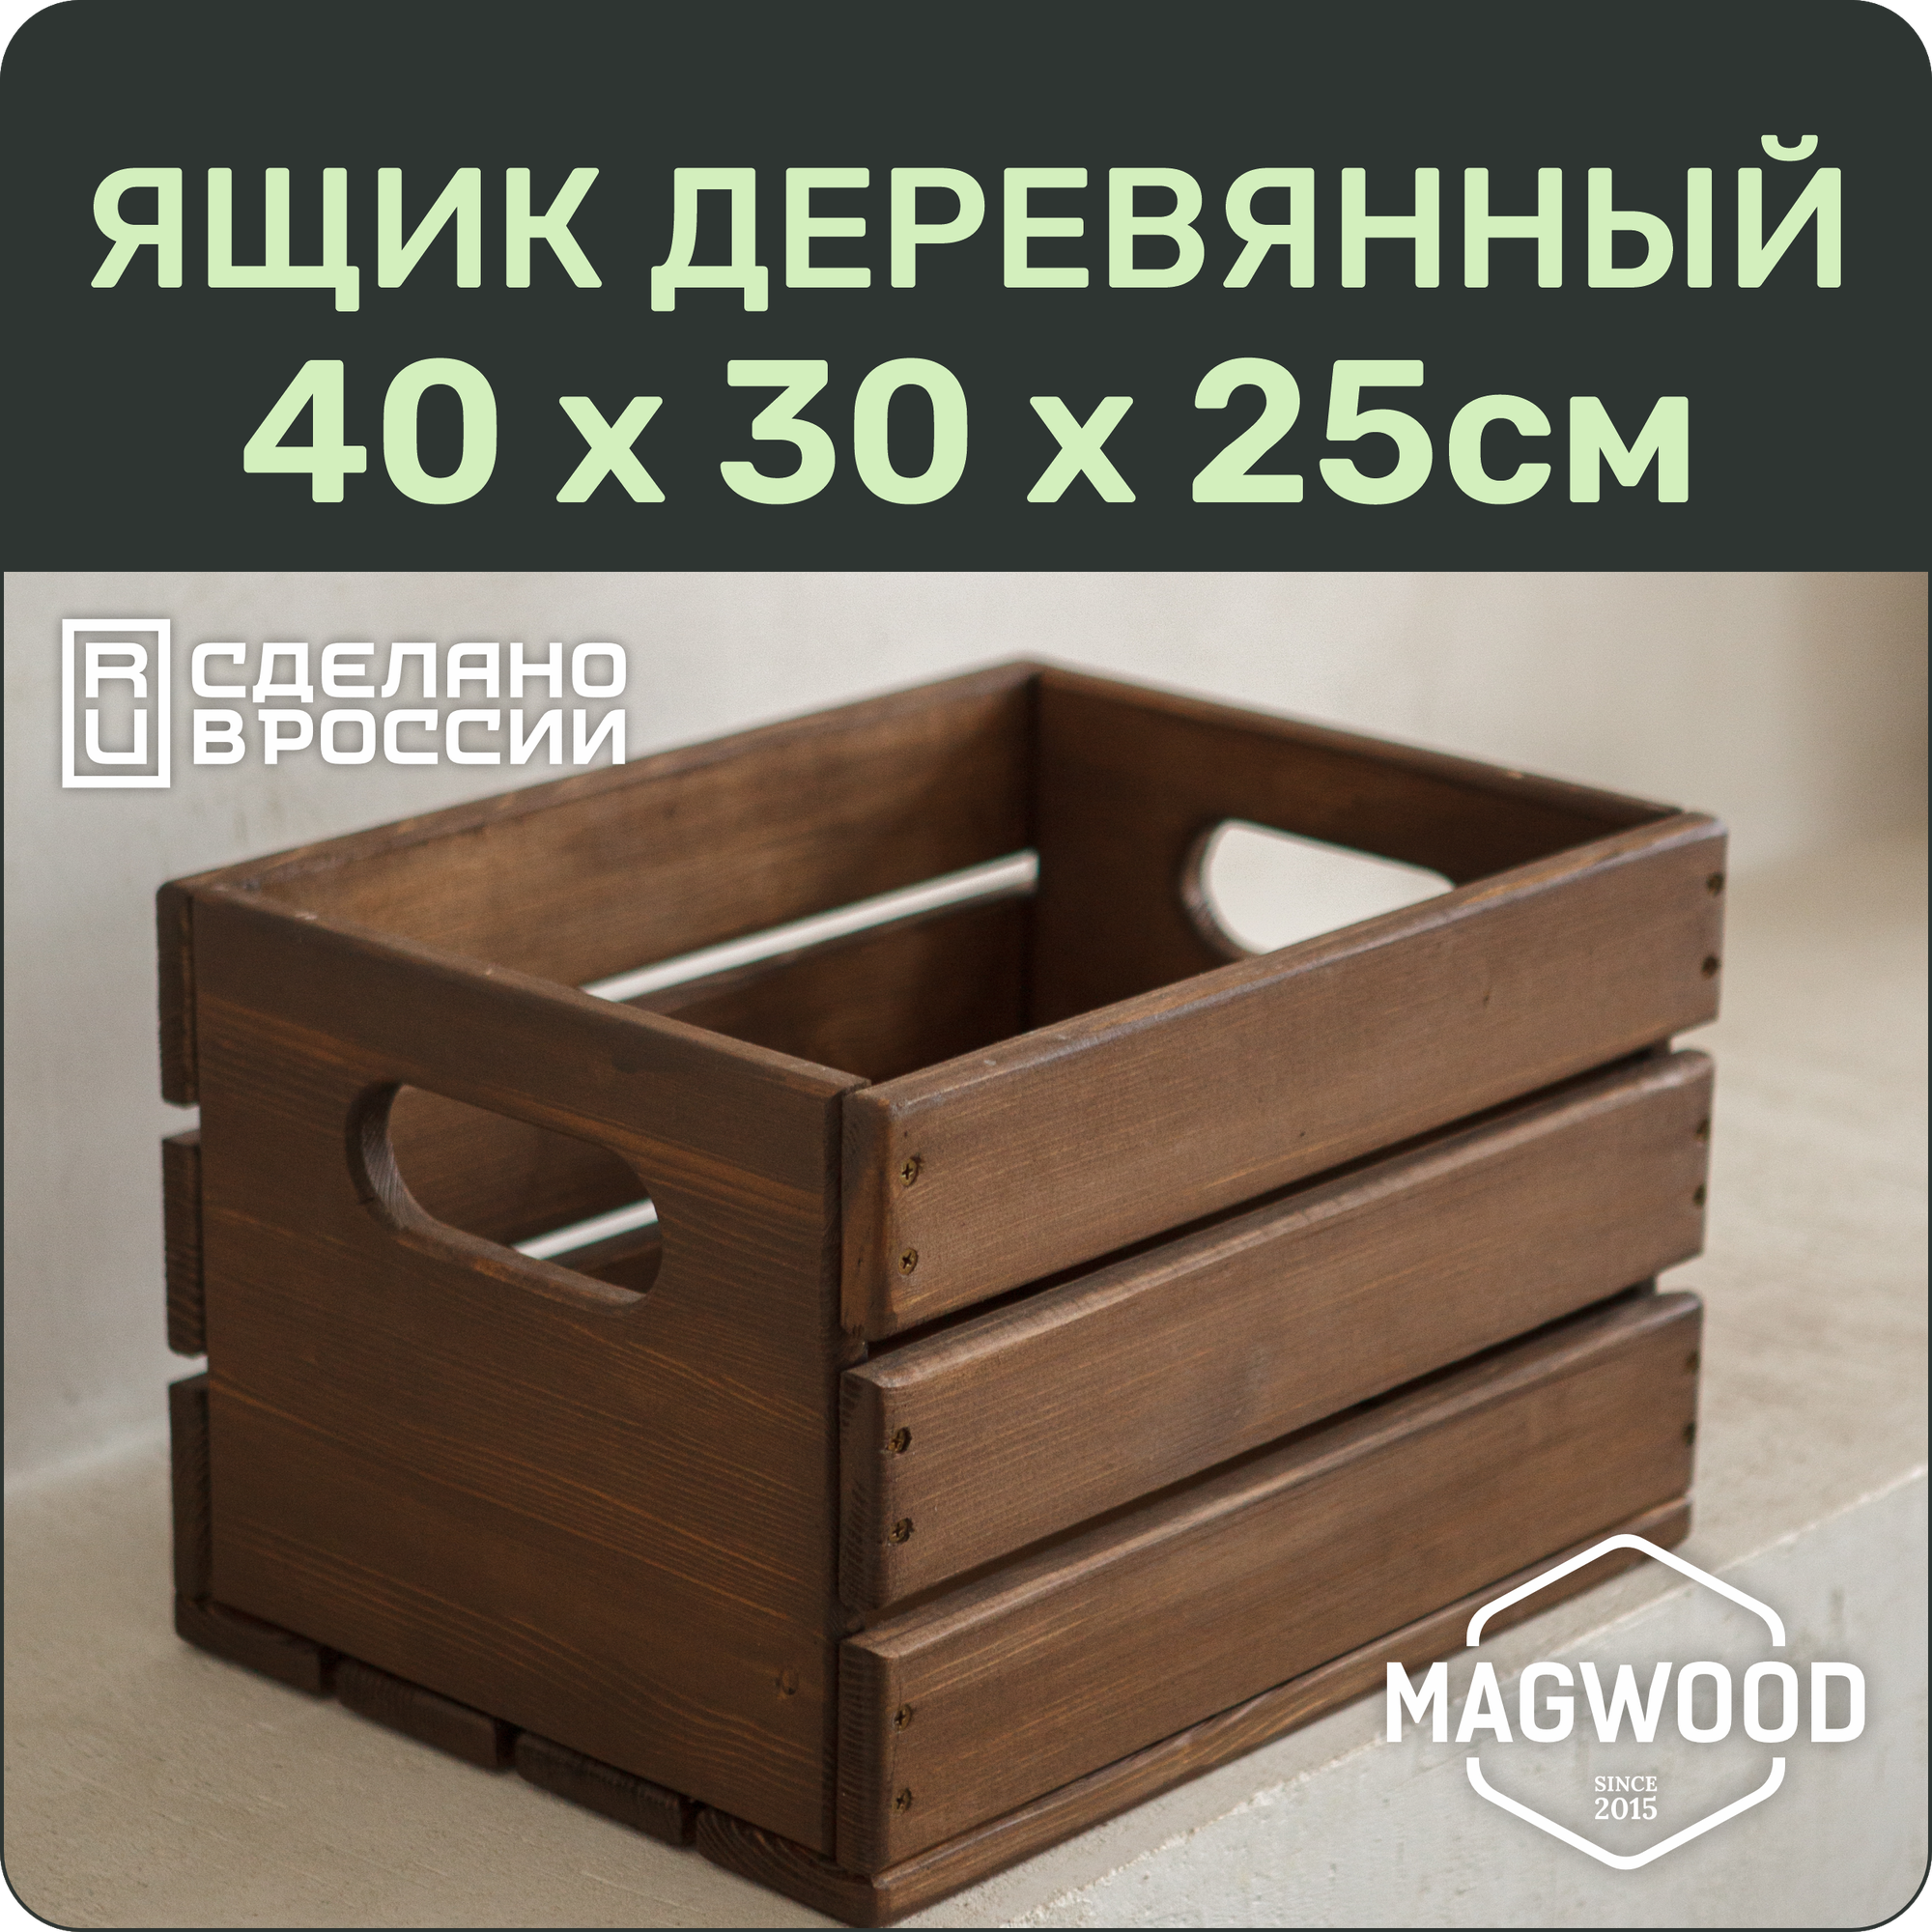 Ящик деревянный 40х30см для хранения вещей